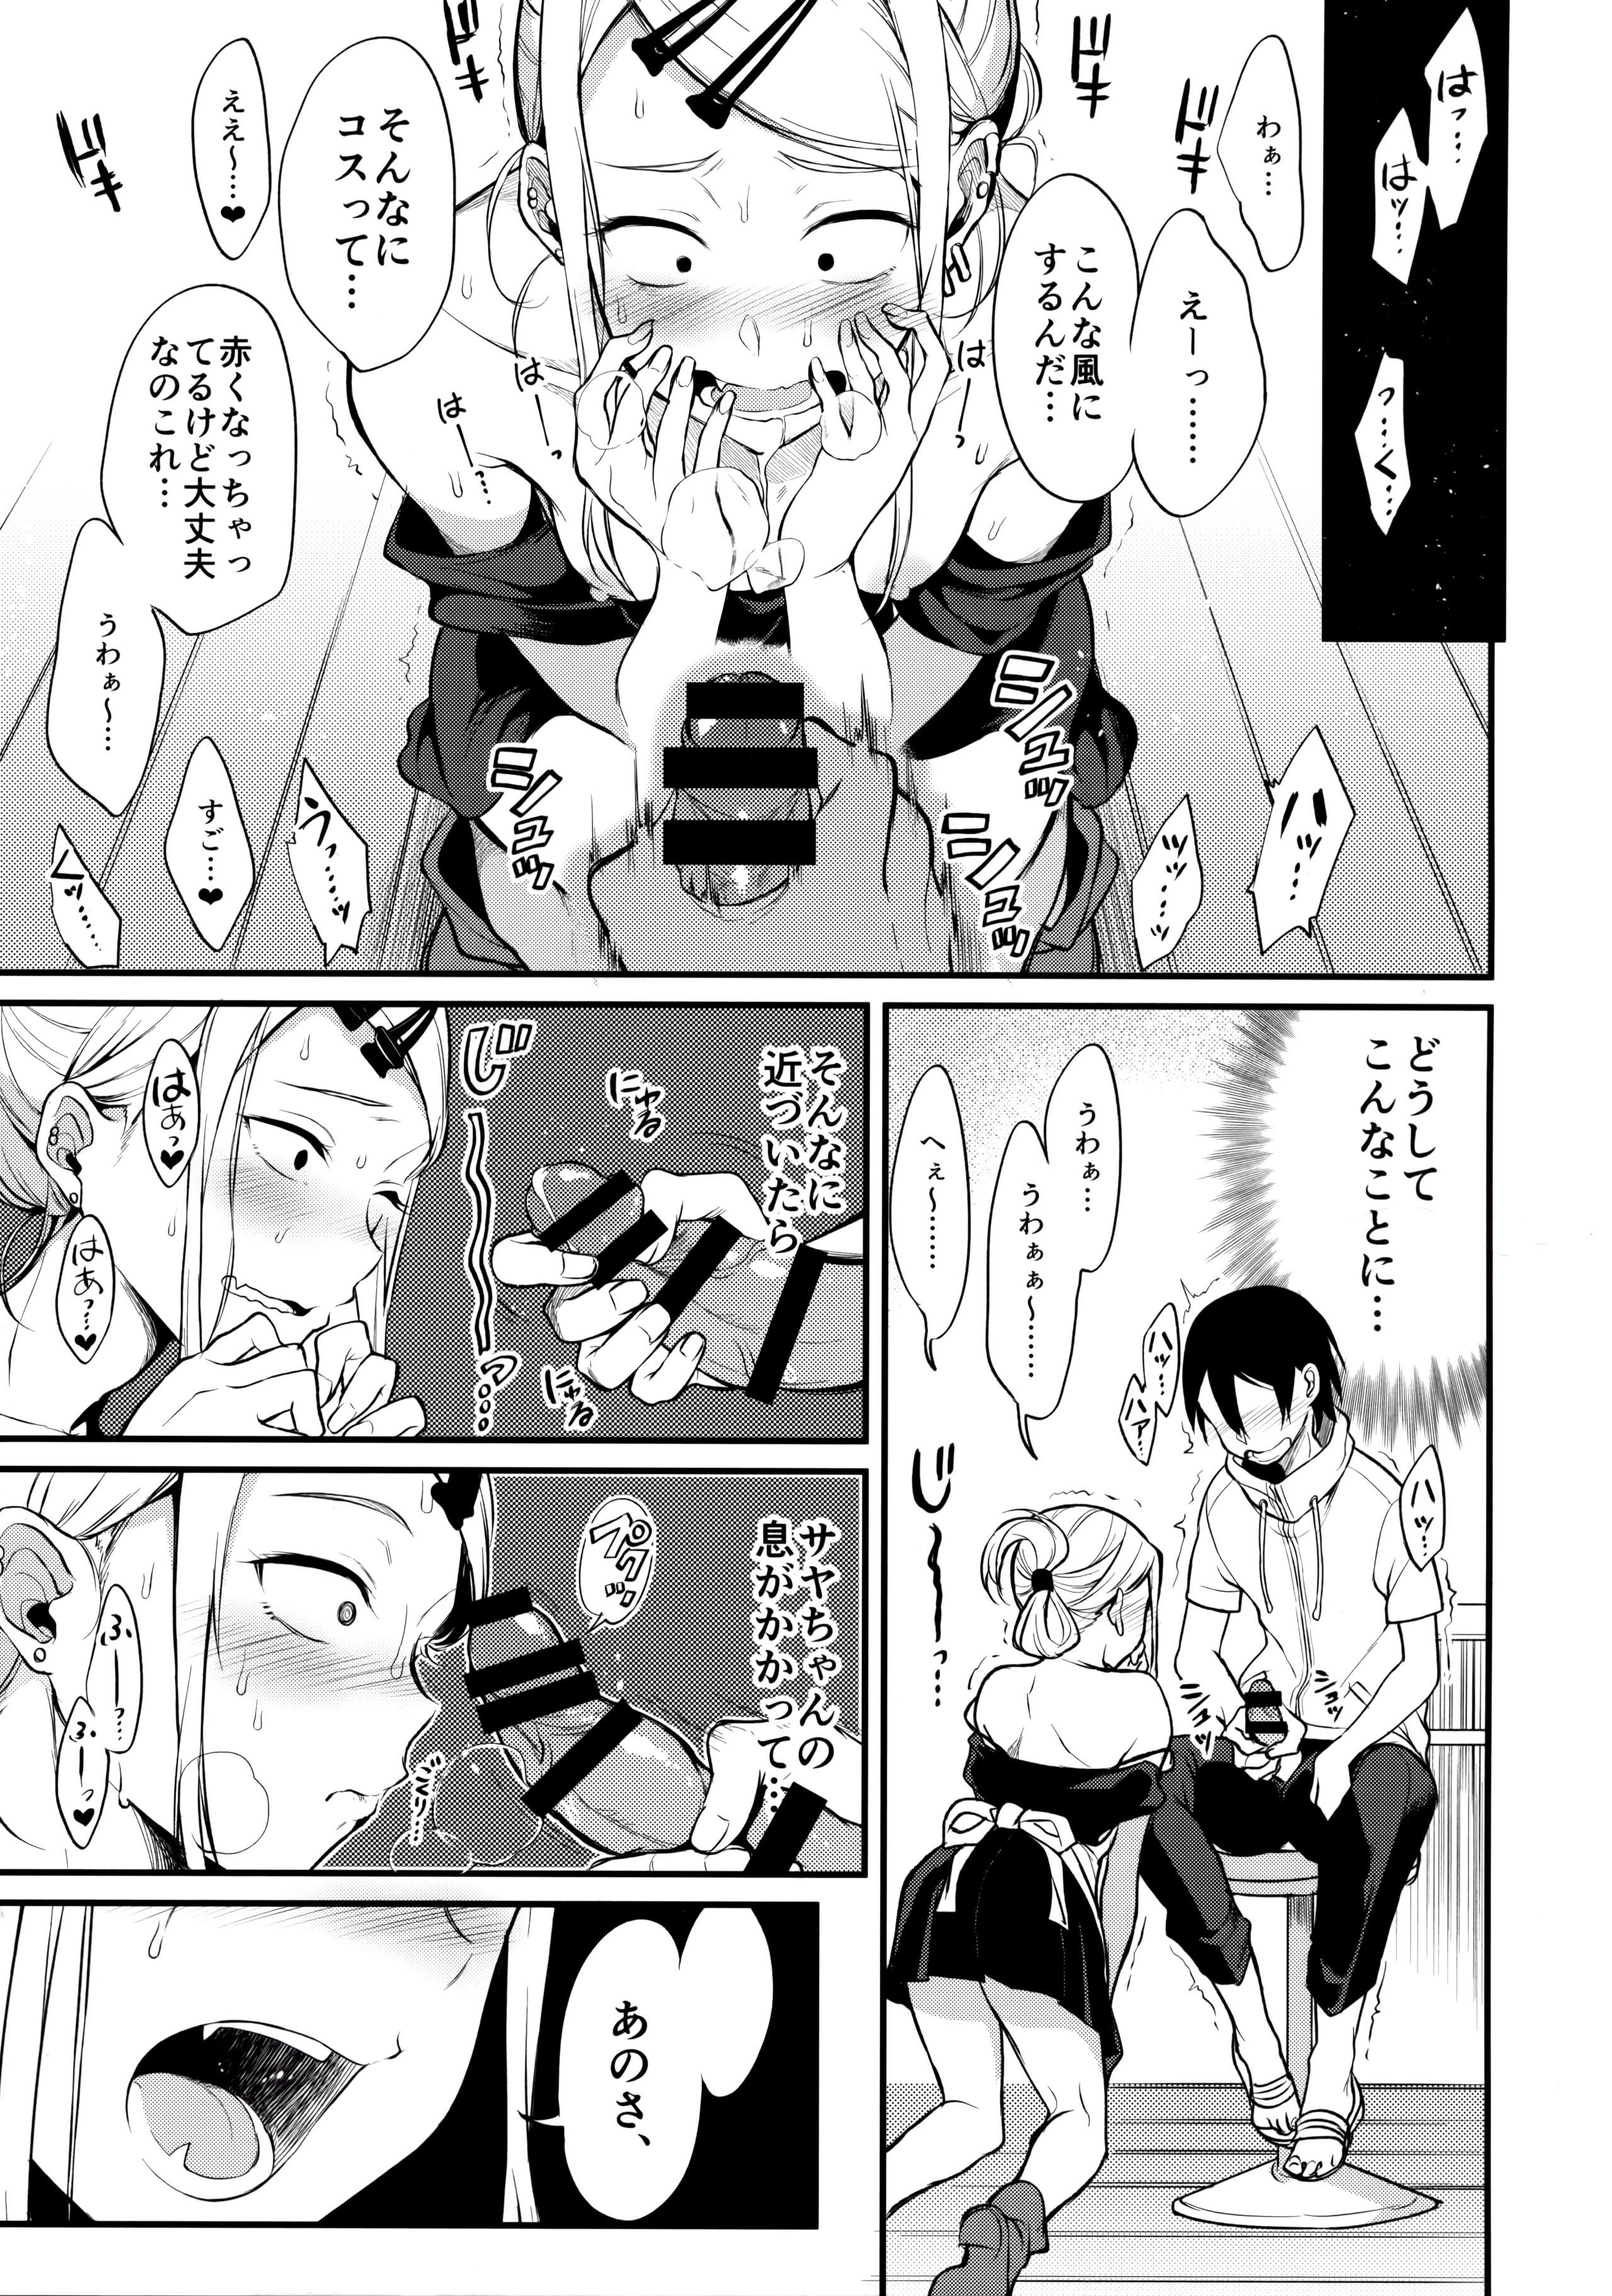 Pov Blow Job Otona no Dagashi 4 - Dagashi kashi Fantasy - Page 6